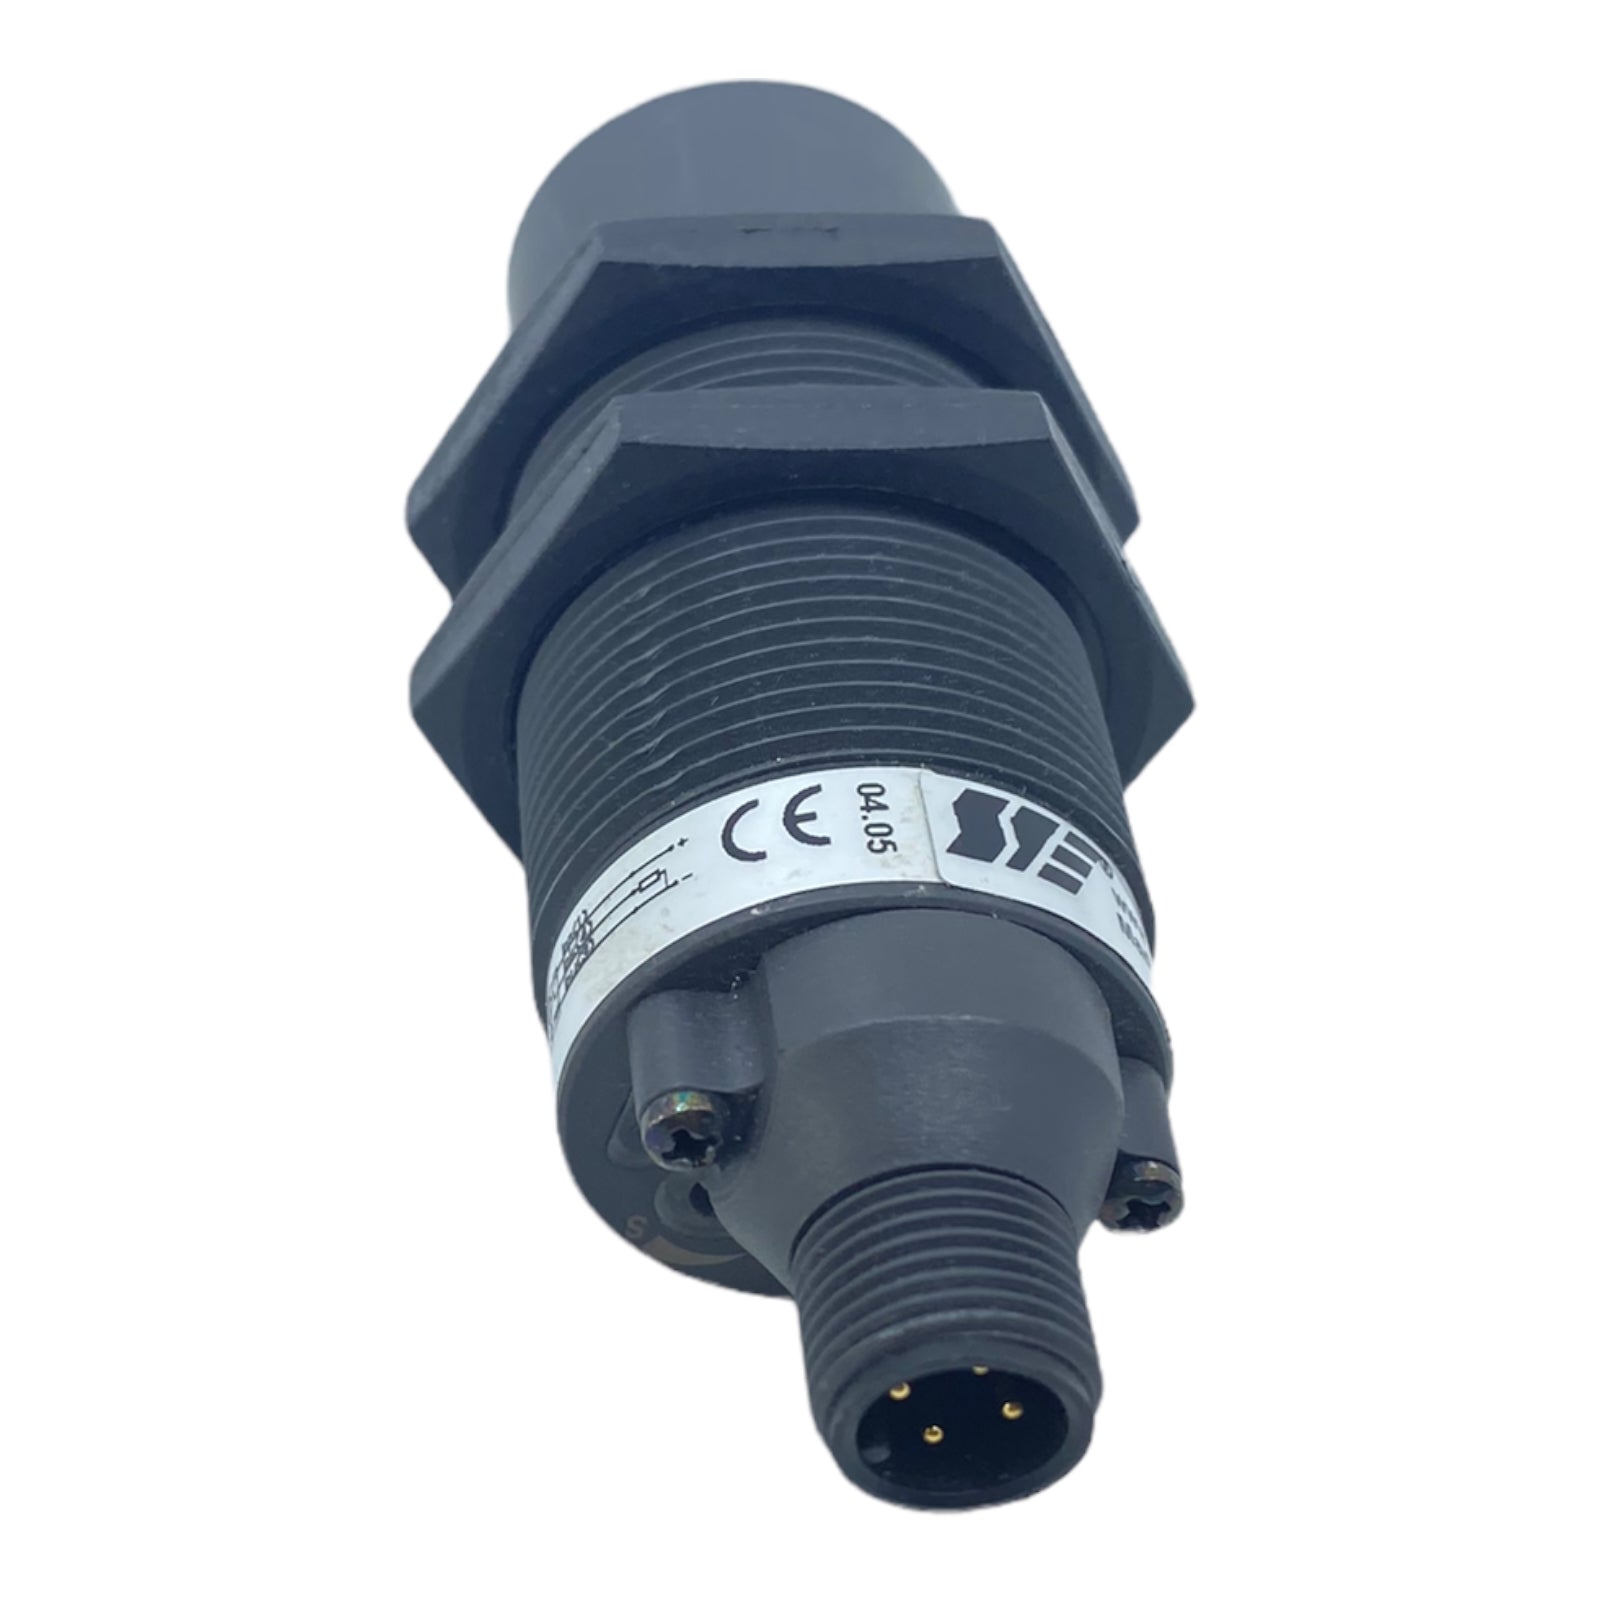 Sensorik SK1-20-M30-AC-B-S SIE Capacitive Proximity Sensor NEW NO BOX